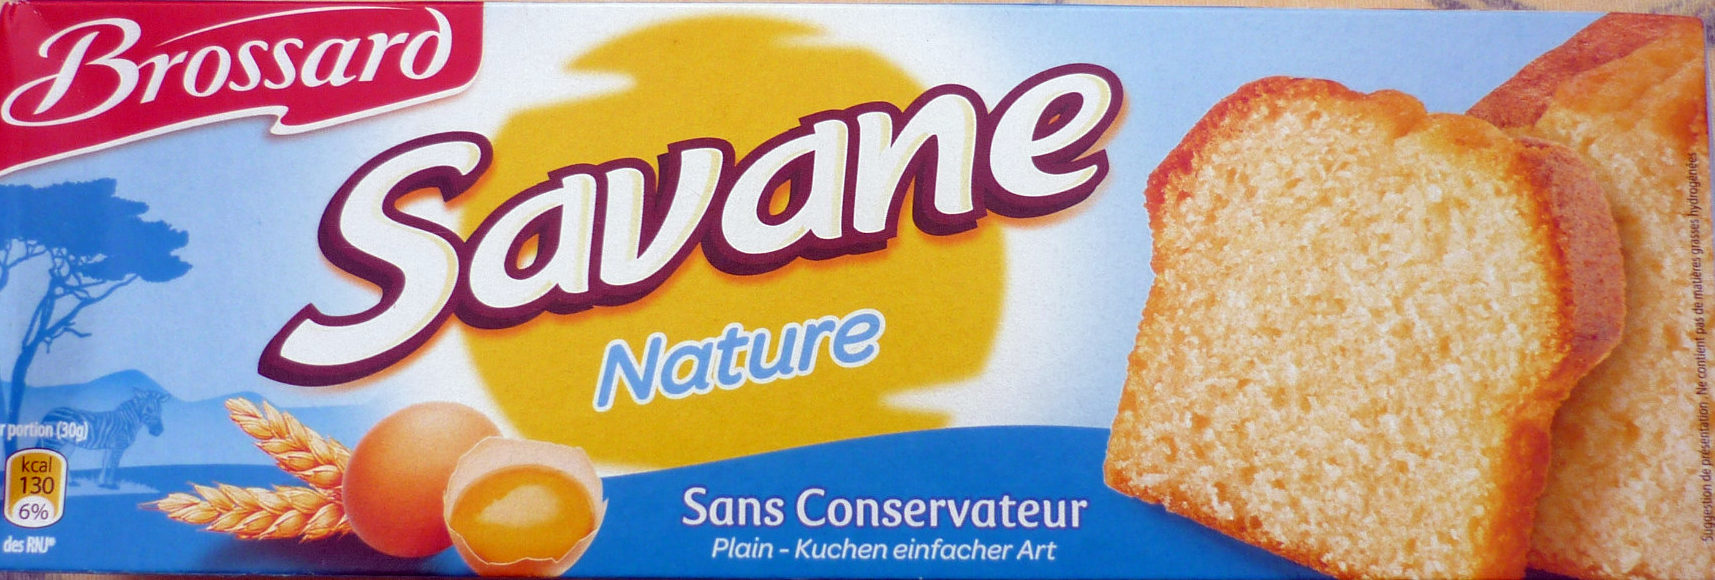 Savane Gateau yaourt Nature - Produit